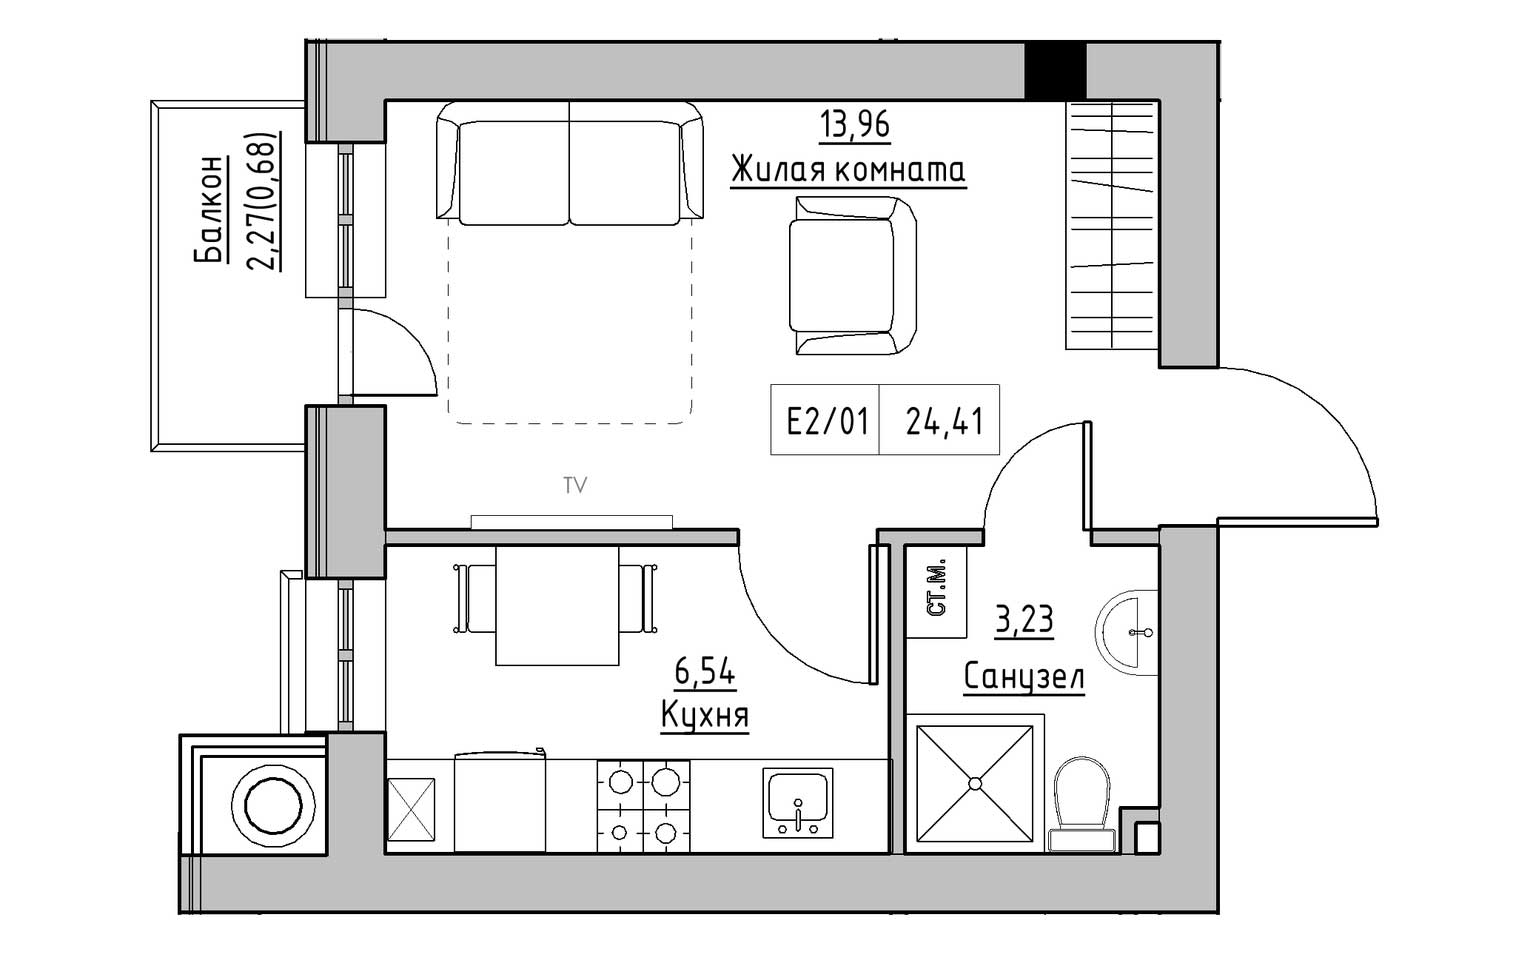 Планування 1-к квартира площею 24.41м2, KS-009-03/0005.